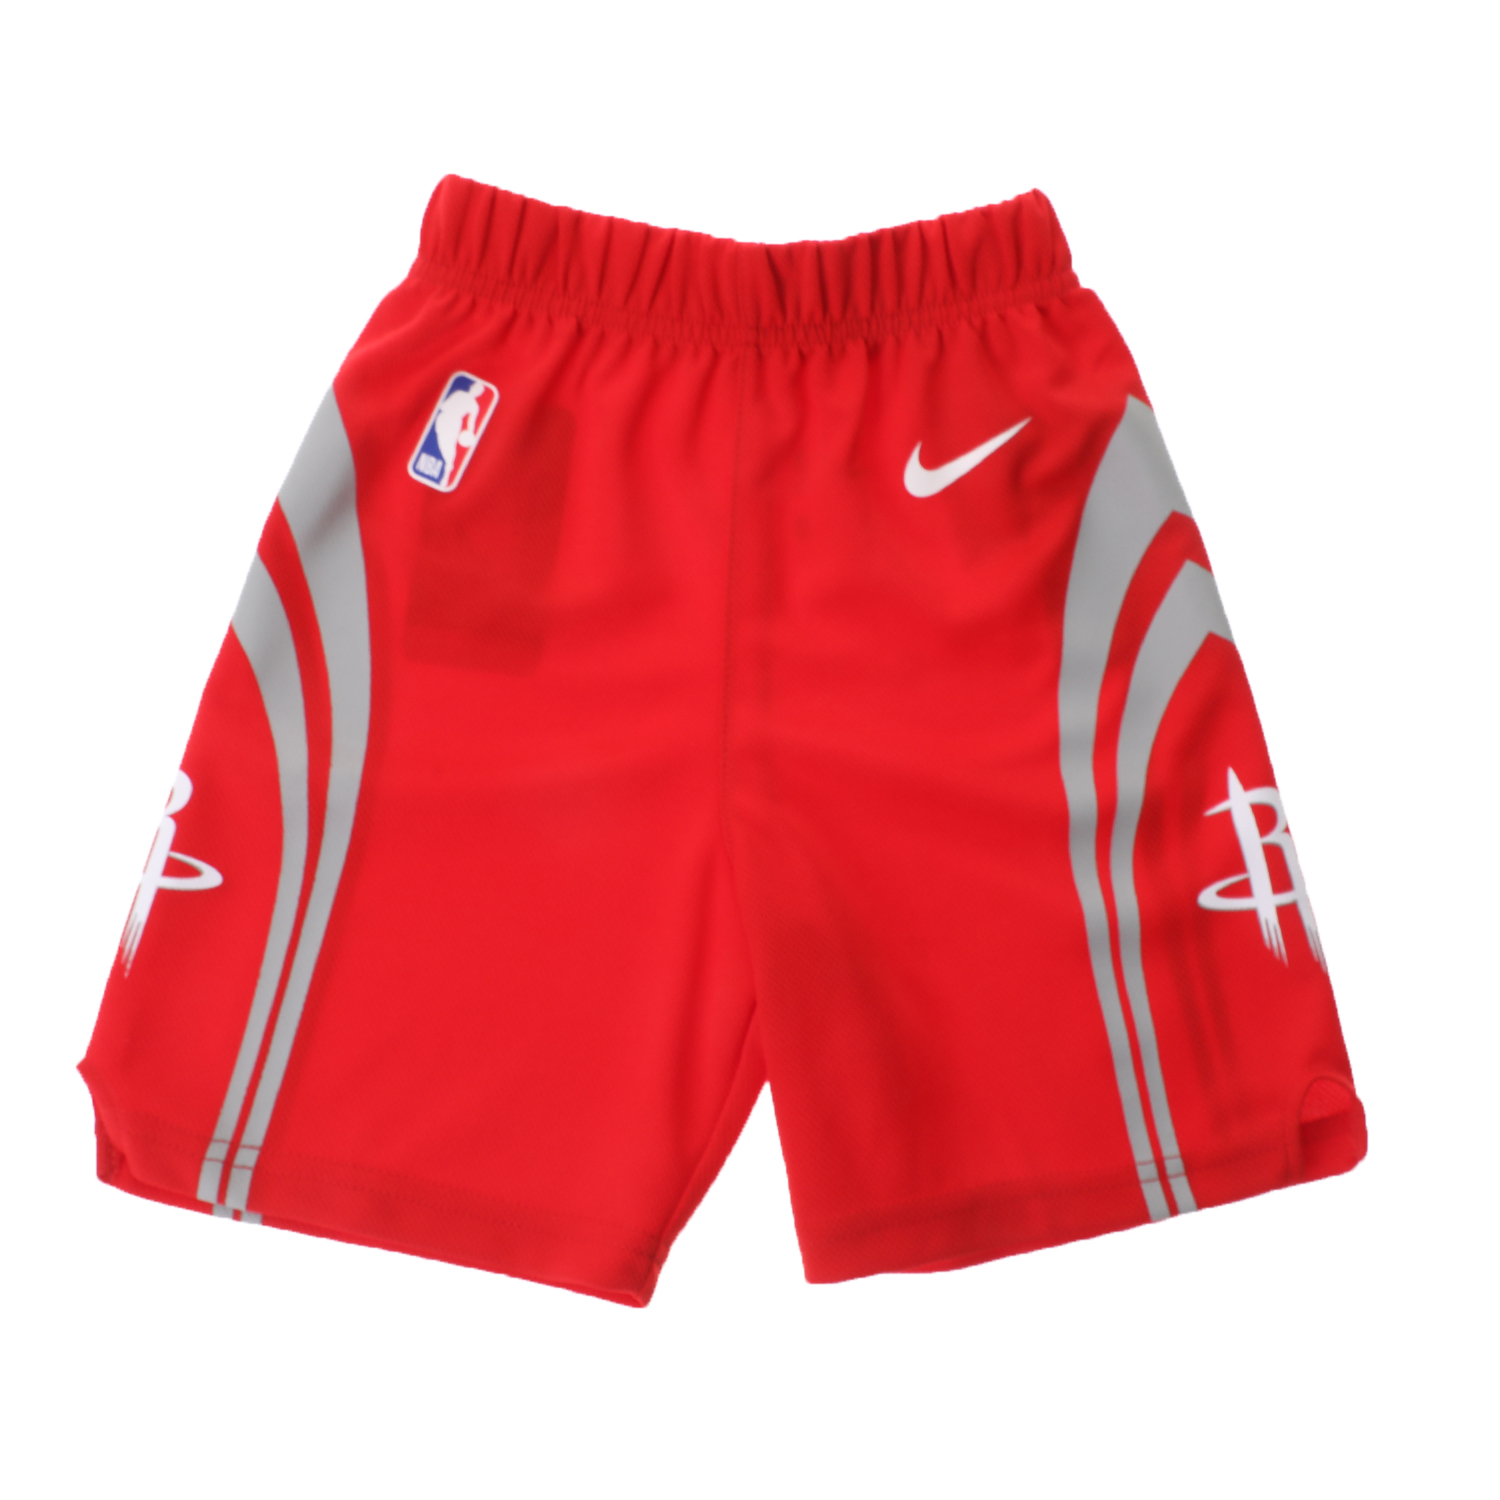 Παιδικά/Baby/Ρούχα/Αθλητικά NIKE - Βρεφική βερμούδα NIKE NBA ROCKETS BACA-RCK 0-7 ICON REPLICA κόκκινη